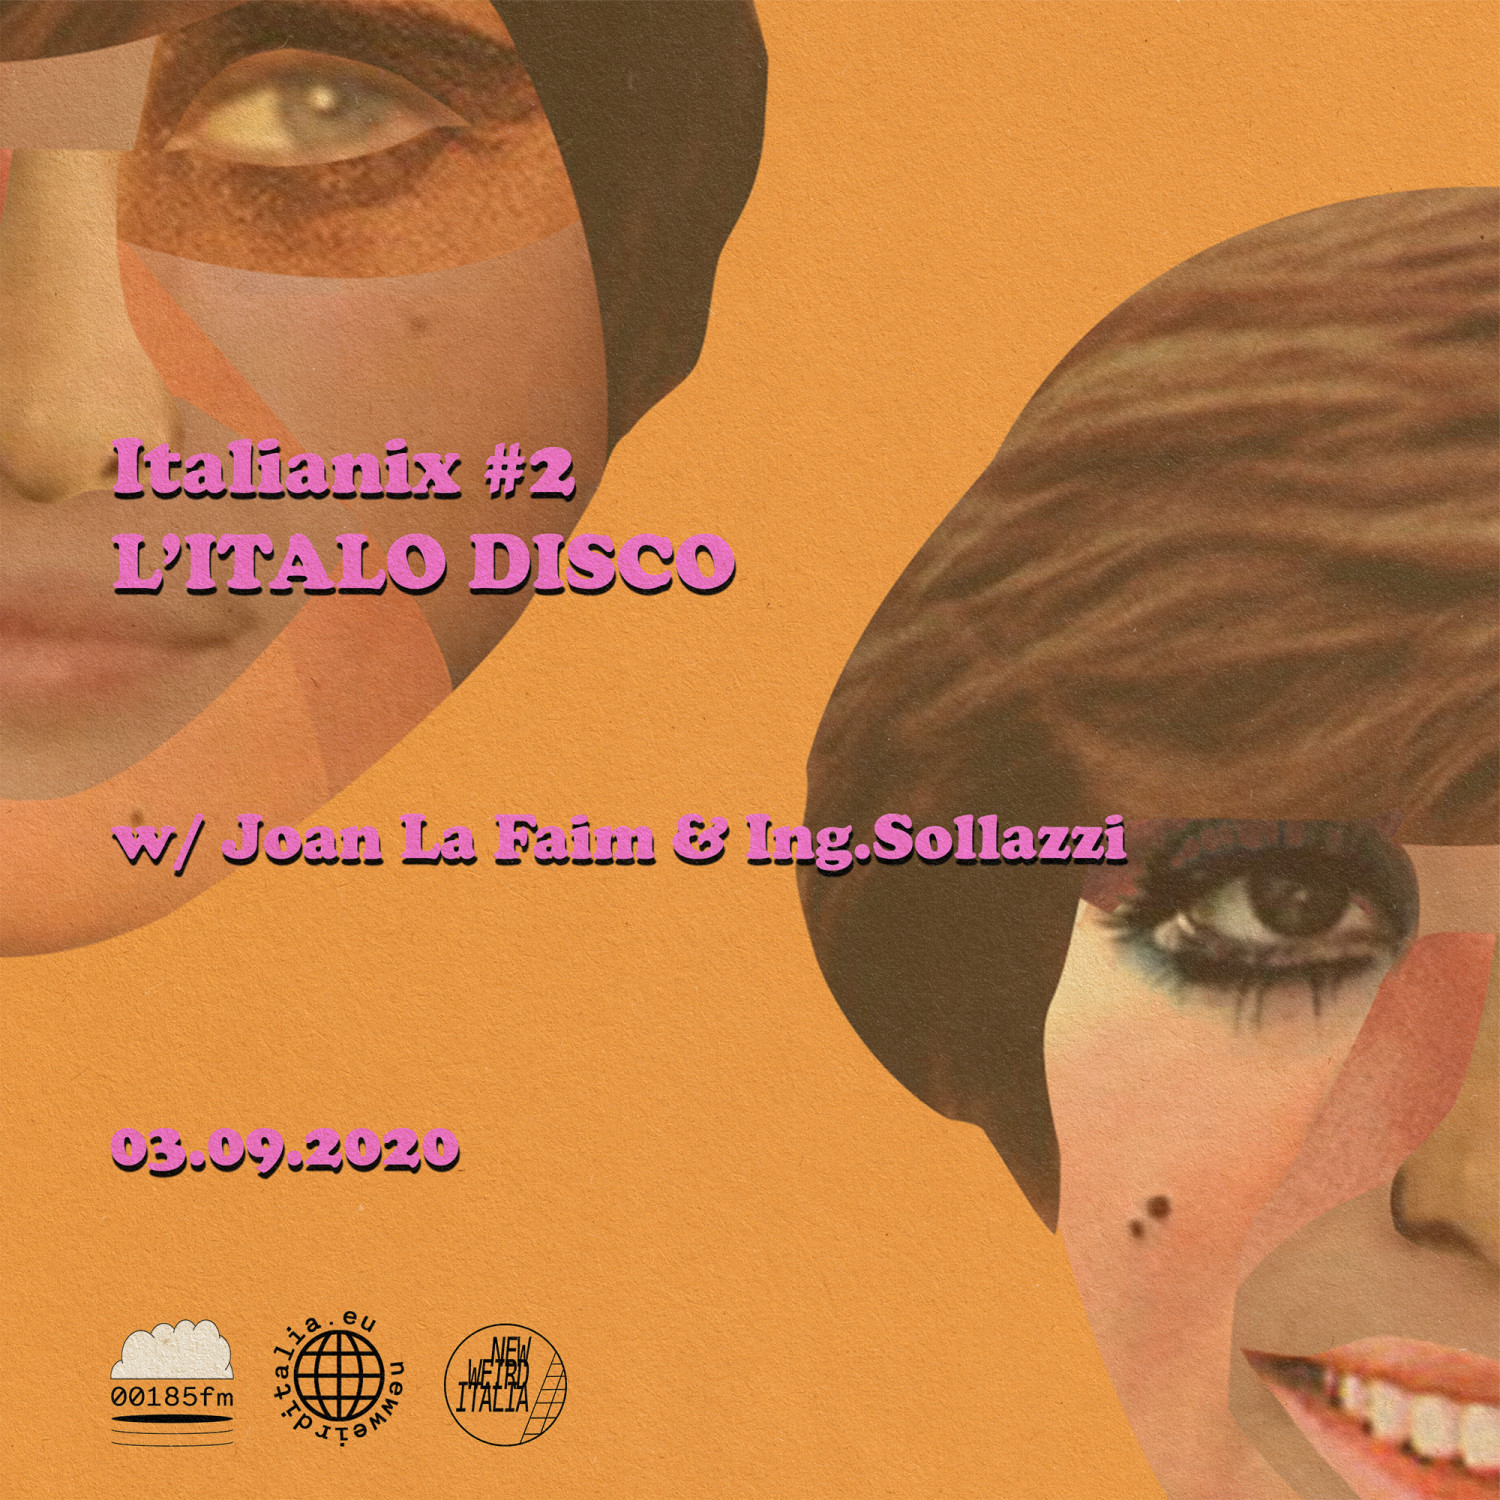 #2 “Italo Disco”